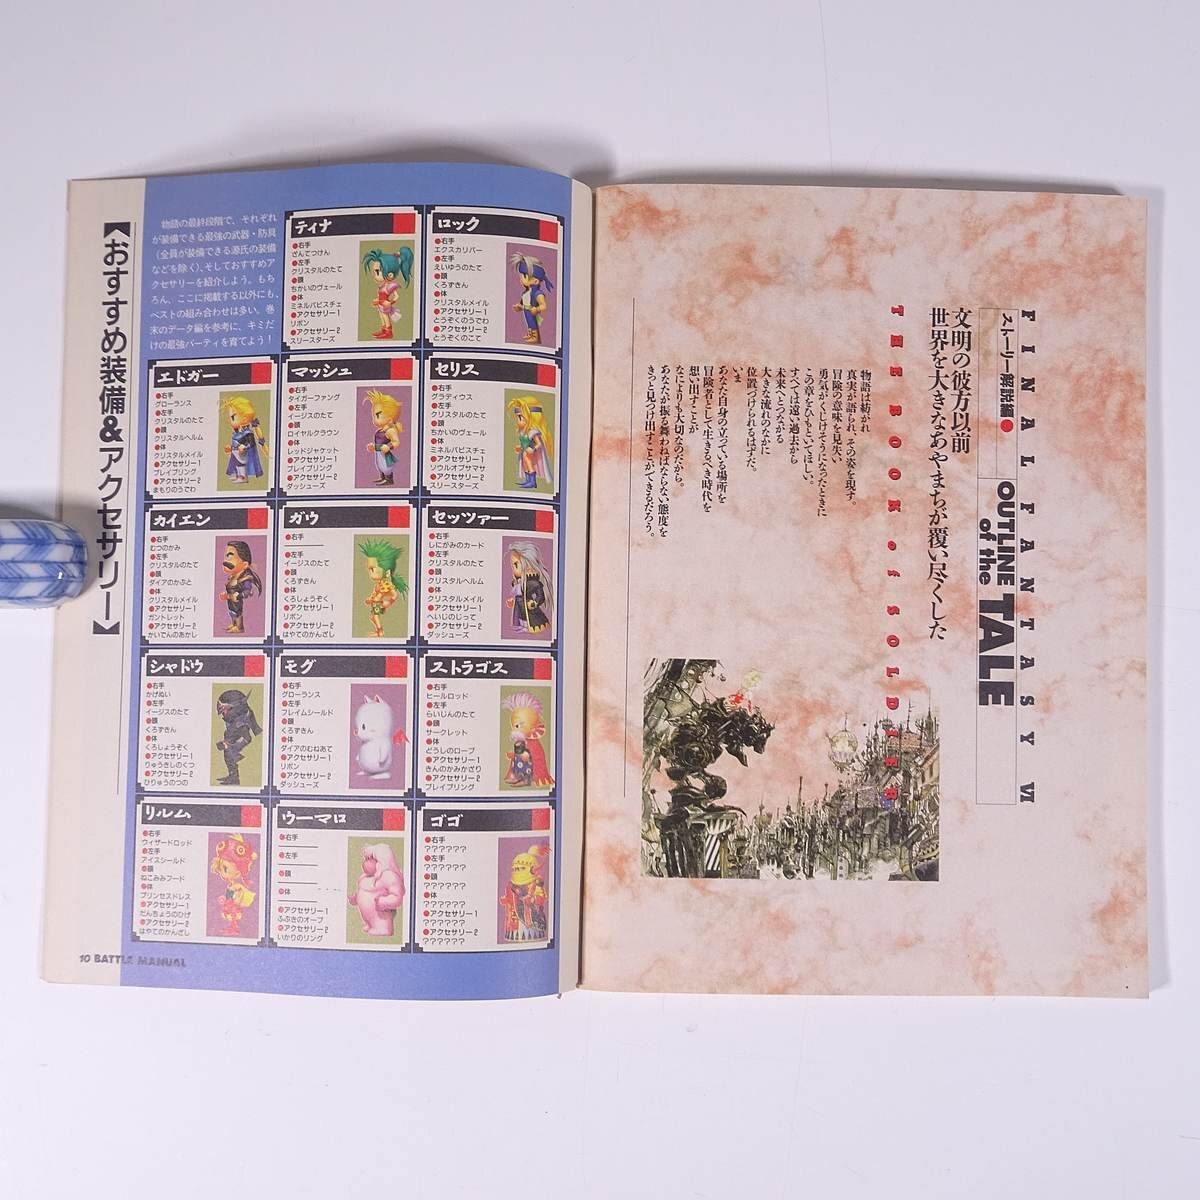 ファイナルファンタジーⅥ 戦士の書 雑誌付録(電撃スーパーファミコン) メディアワークス 1994 小冊子 ゲーム 攻略本_画像7